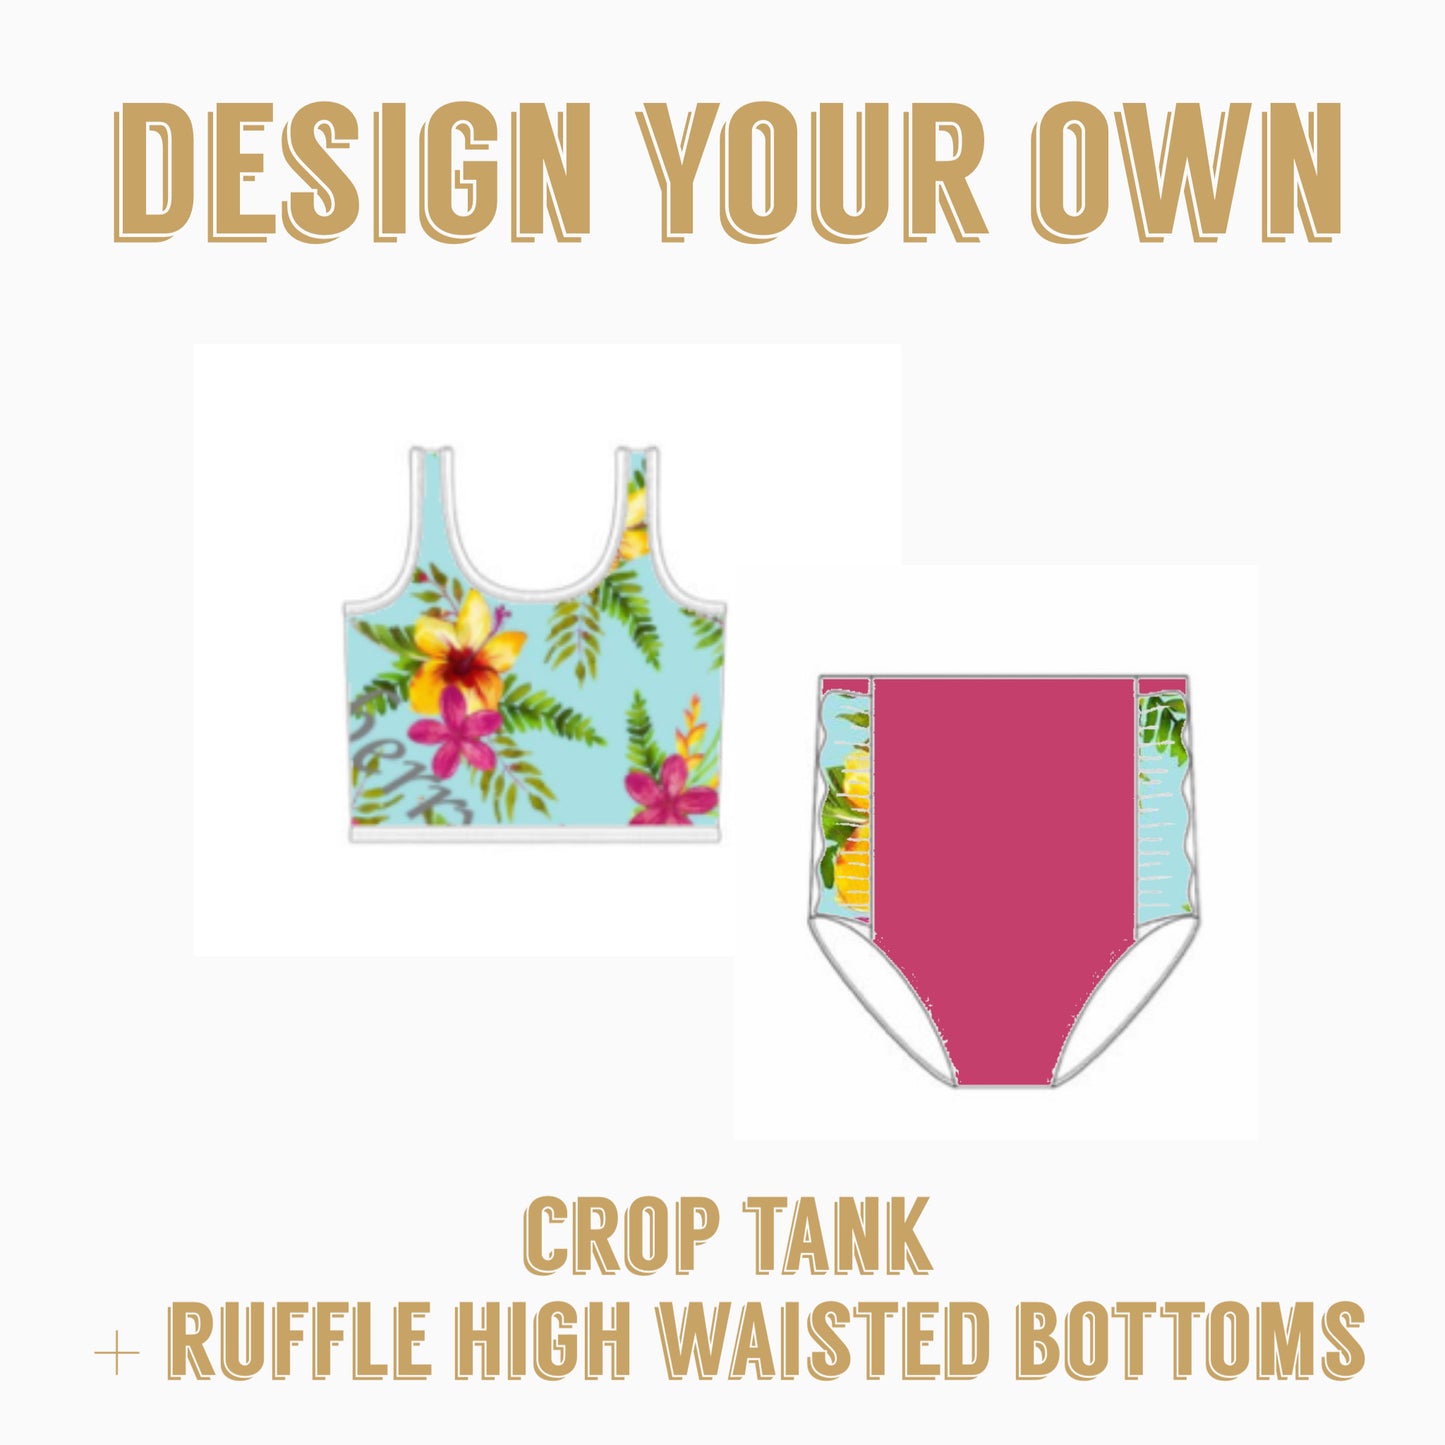 Design Your Own| Crop tank bikini top + Ruffle high waisted bottoms